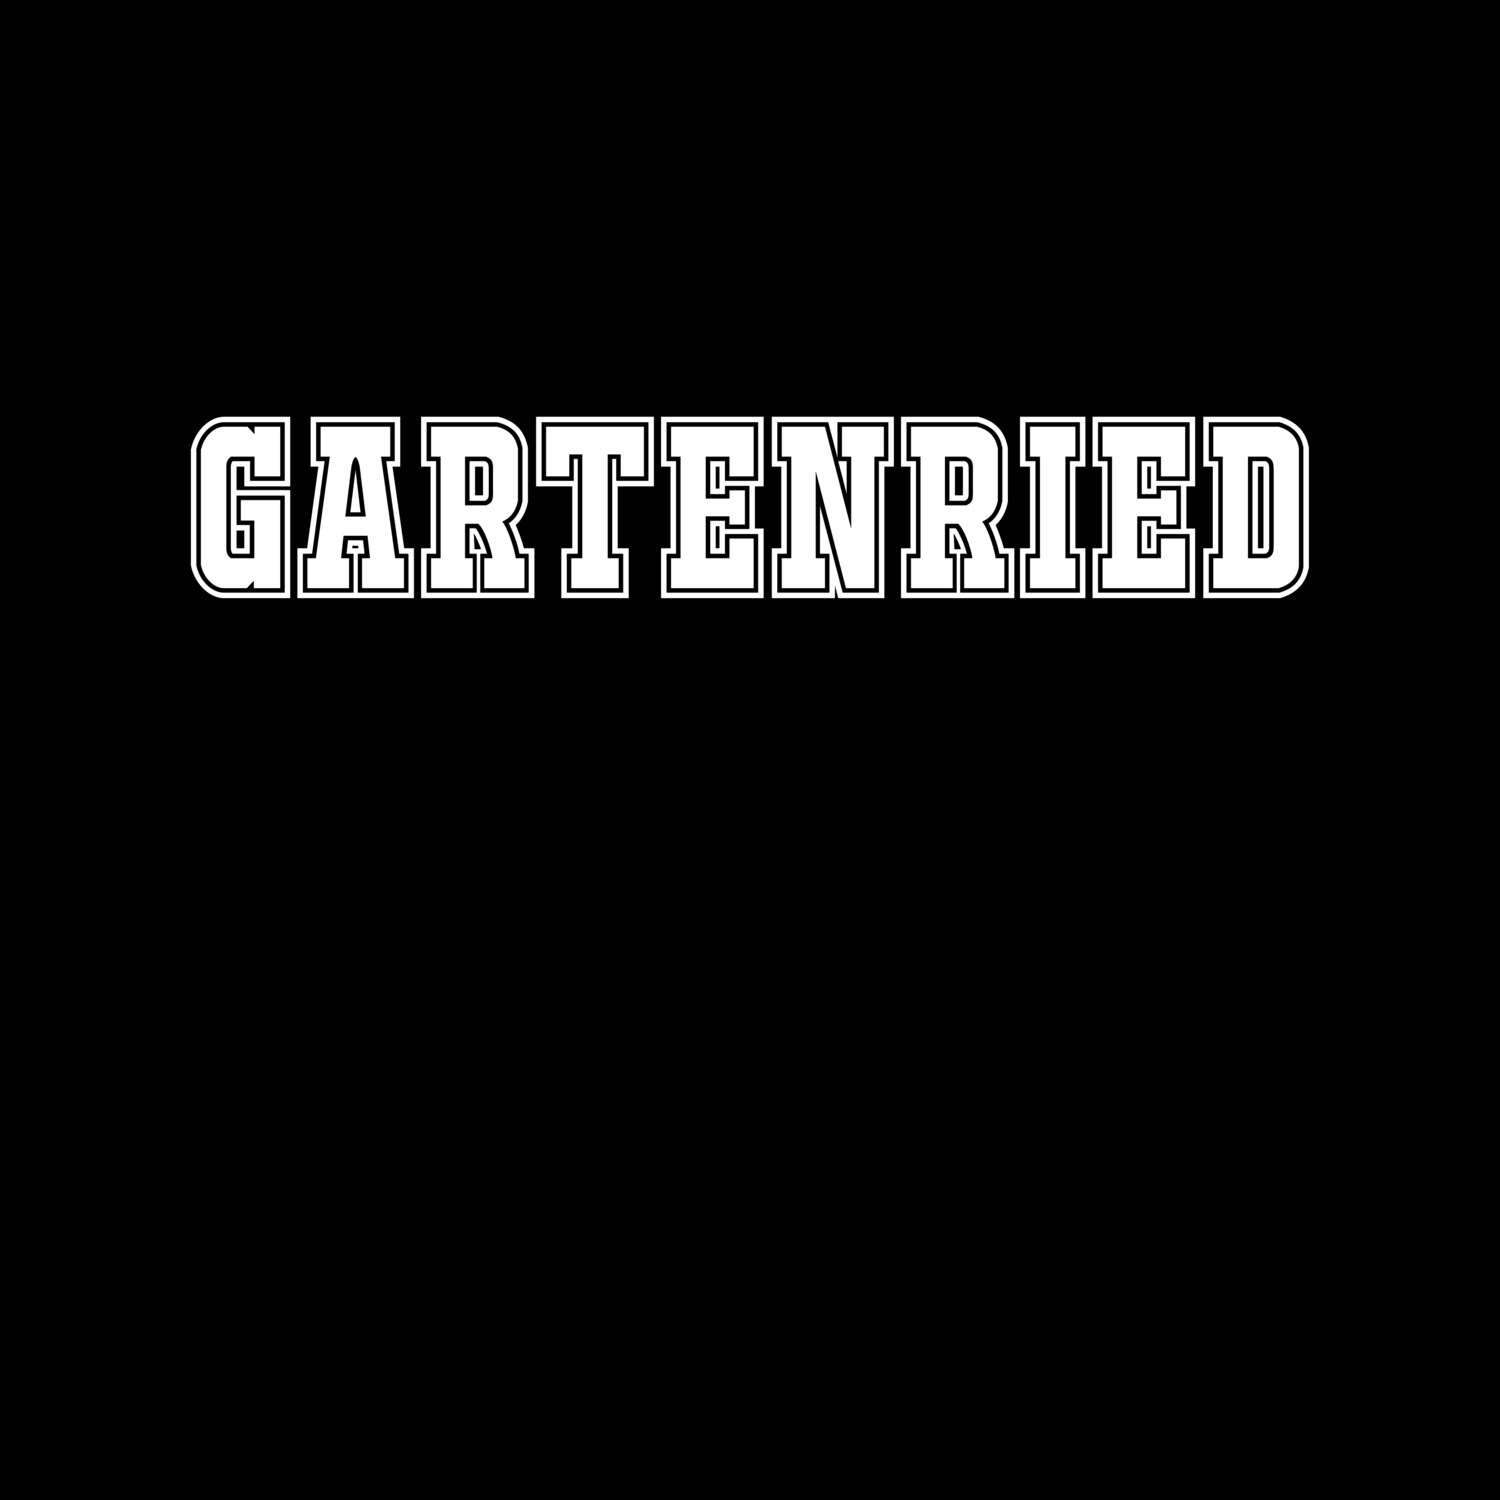 Gartenried T-Shirt »Classic«